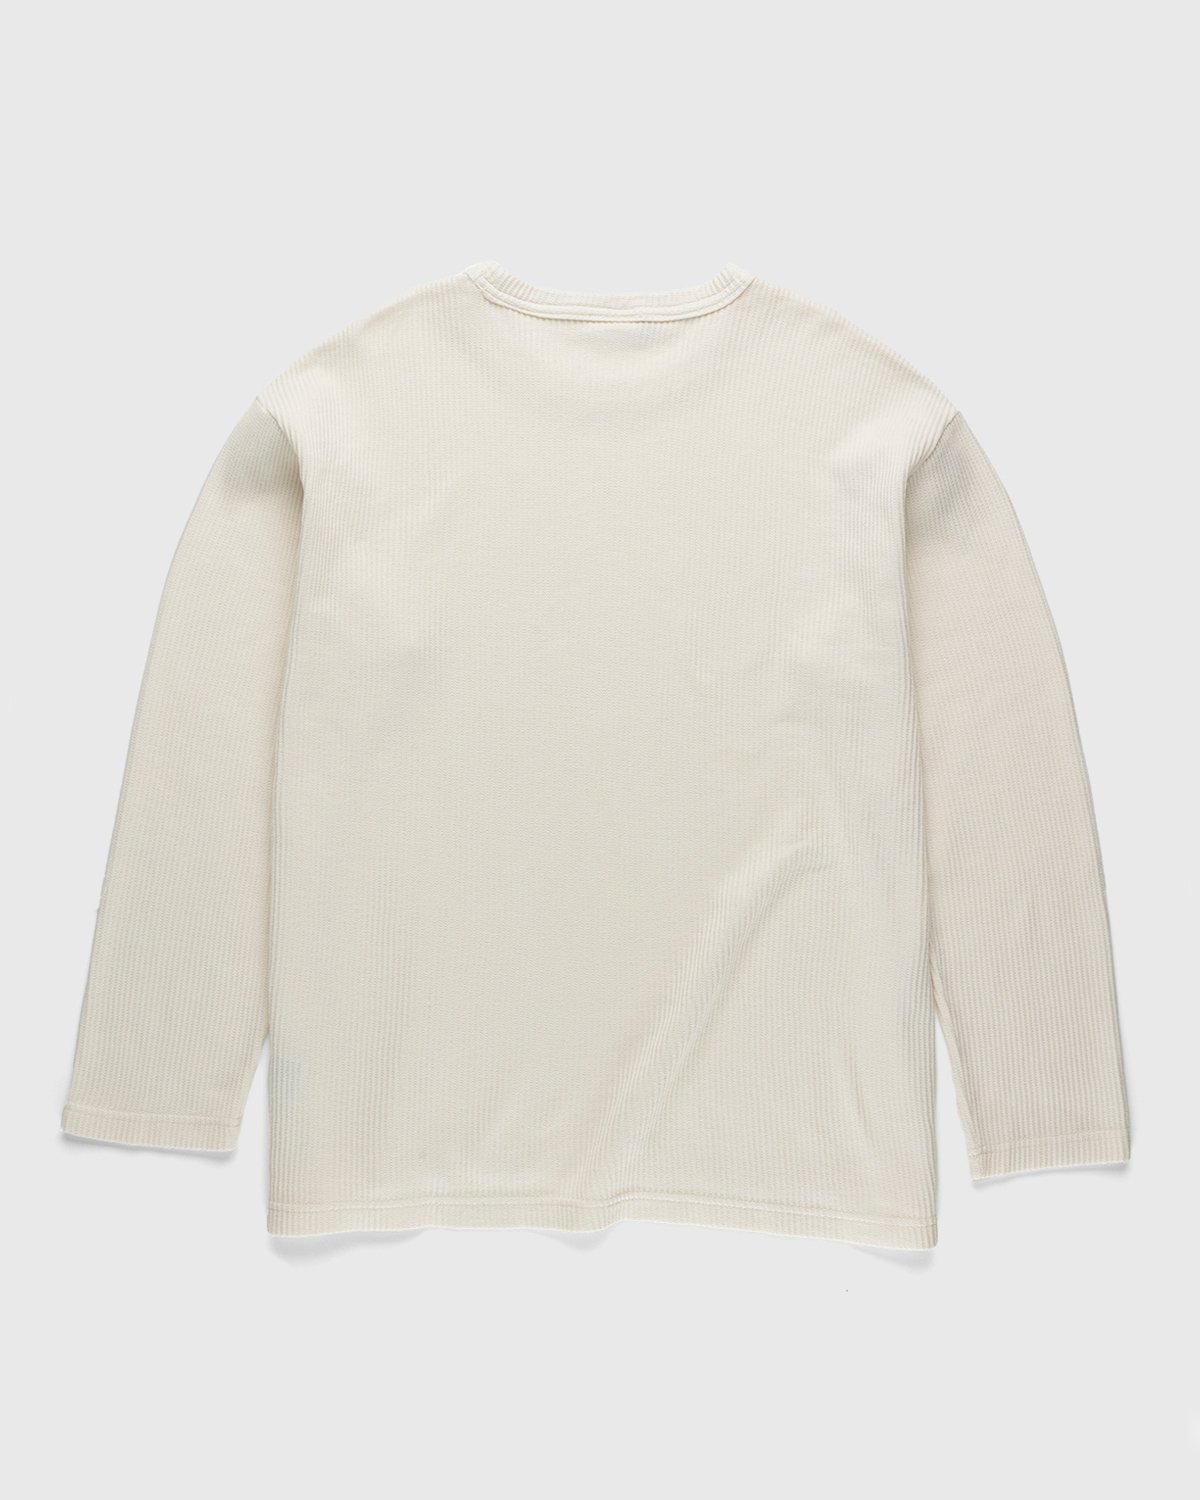 Reebok - Classics Natural Dye Waffle Crew Sweatshirt Non Dyed - Clothing - White - Image 2